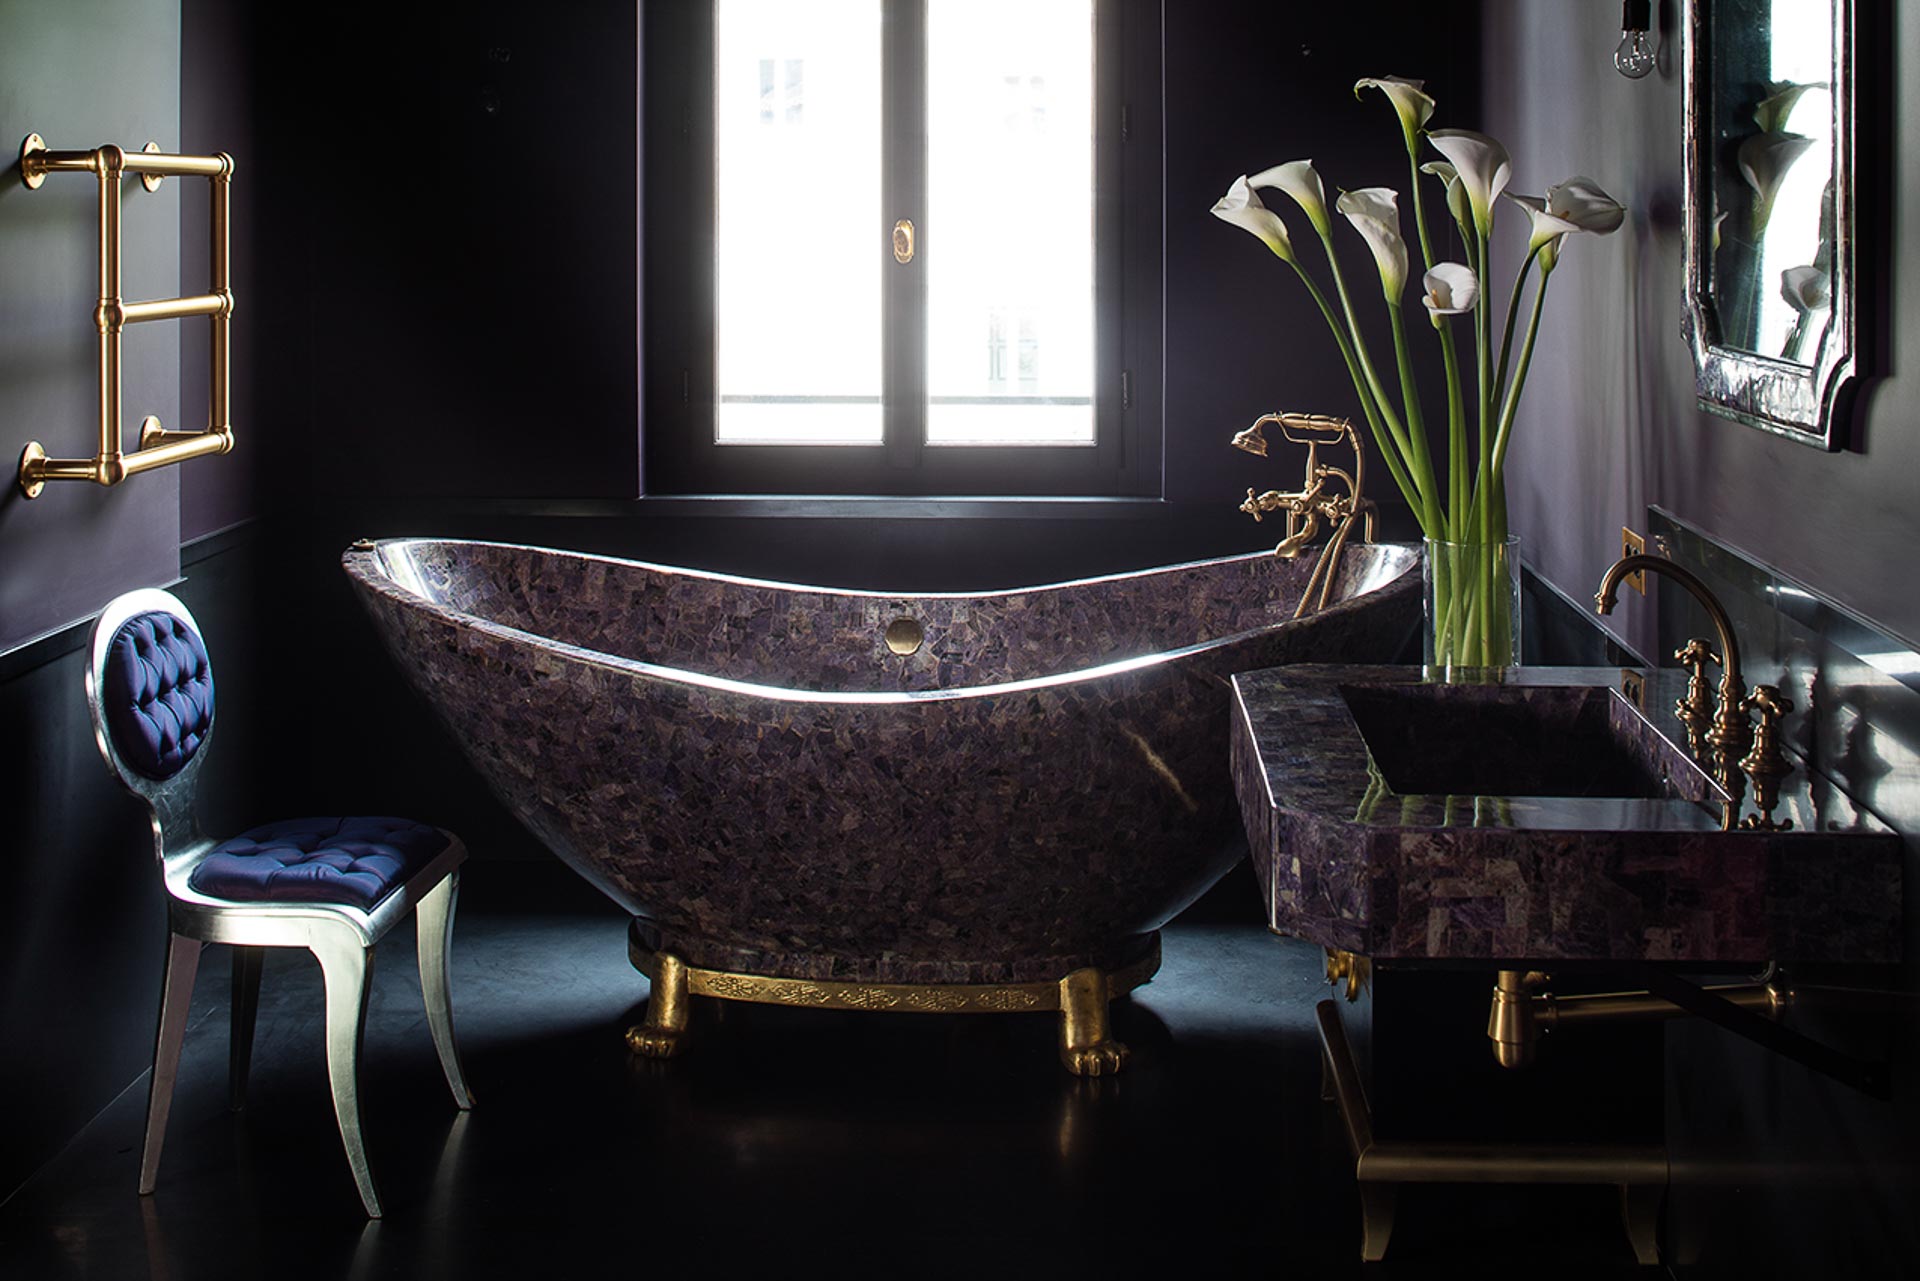 Villa Clara luxury property for private hire Rome available accommodation beautiful bathroom interior design charoite bath tub